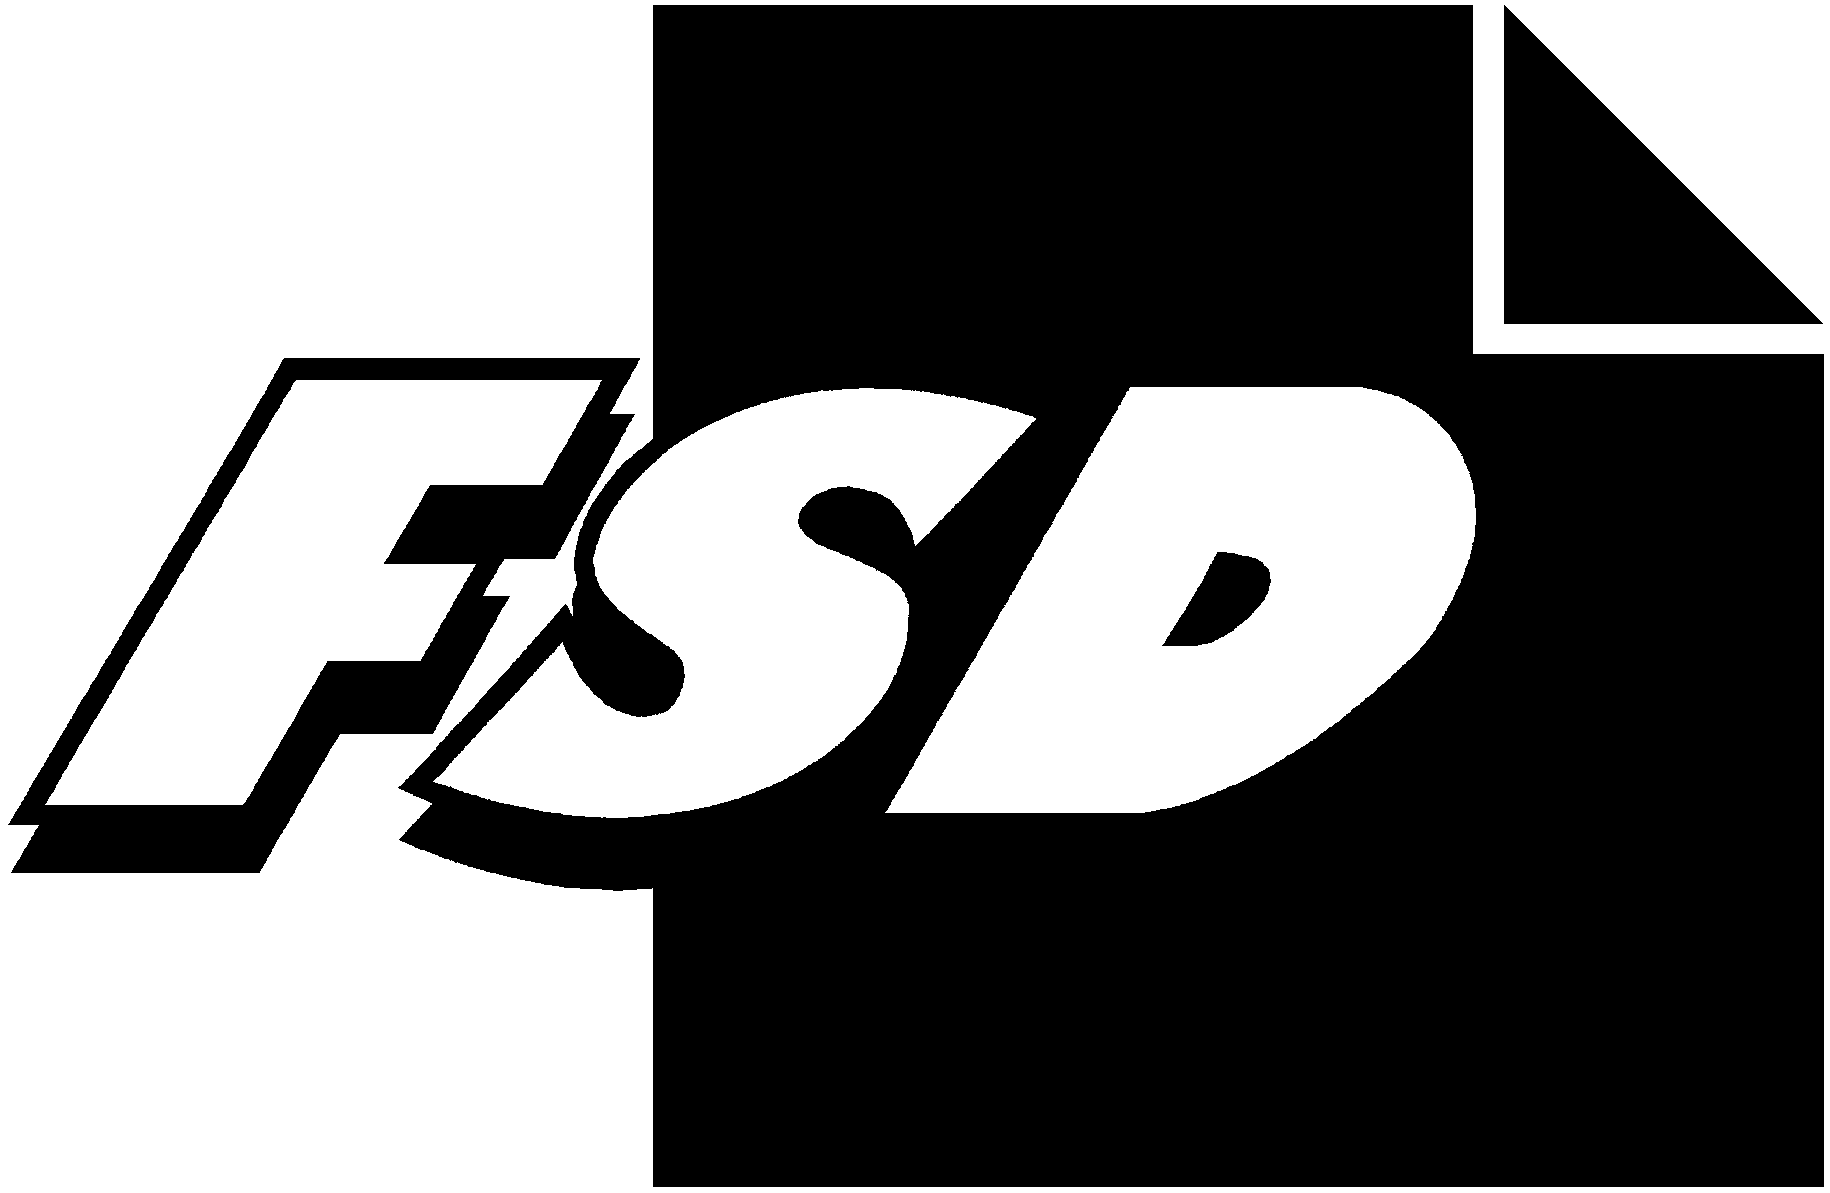 FSD2250 Rahapelitutkimus 2003